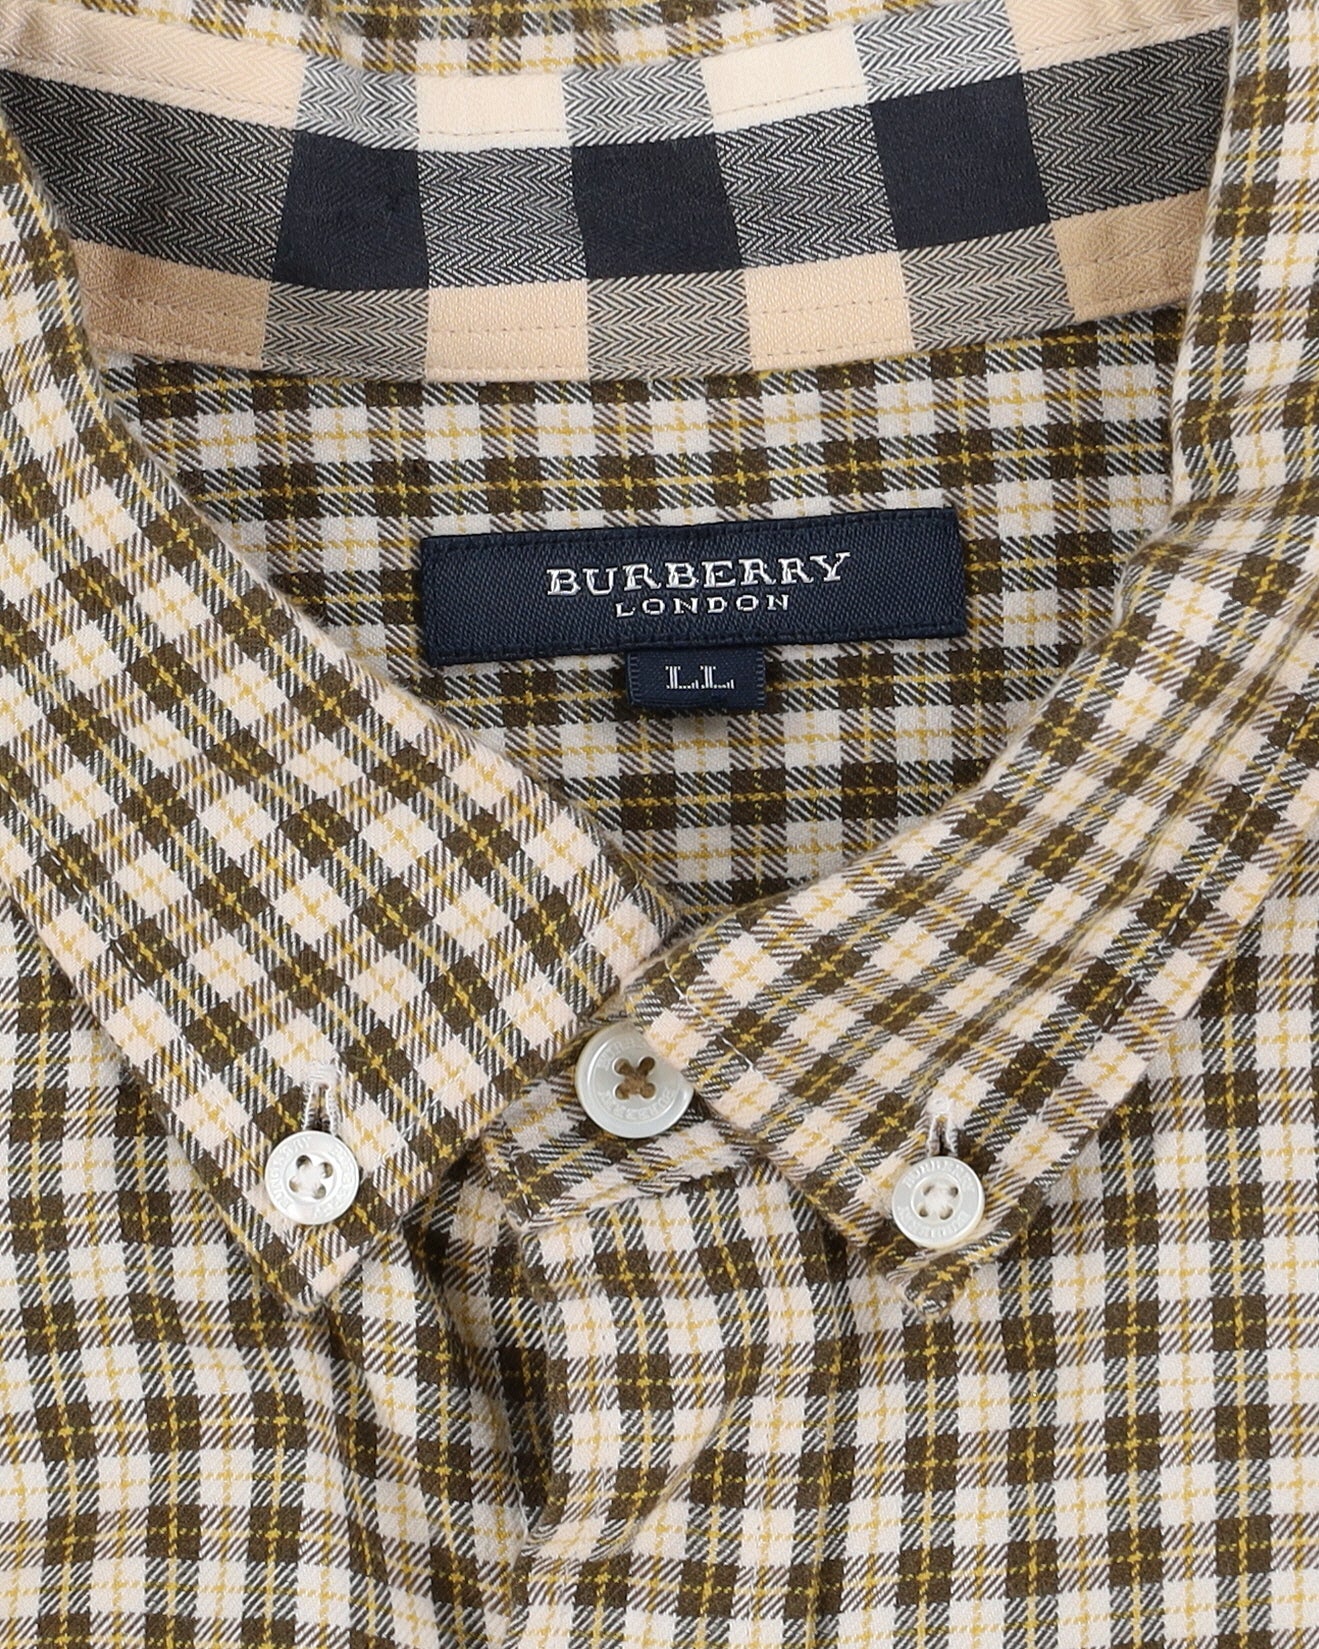 Burberry London Checked Shirt - L / XL